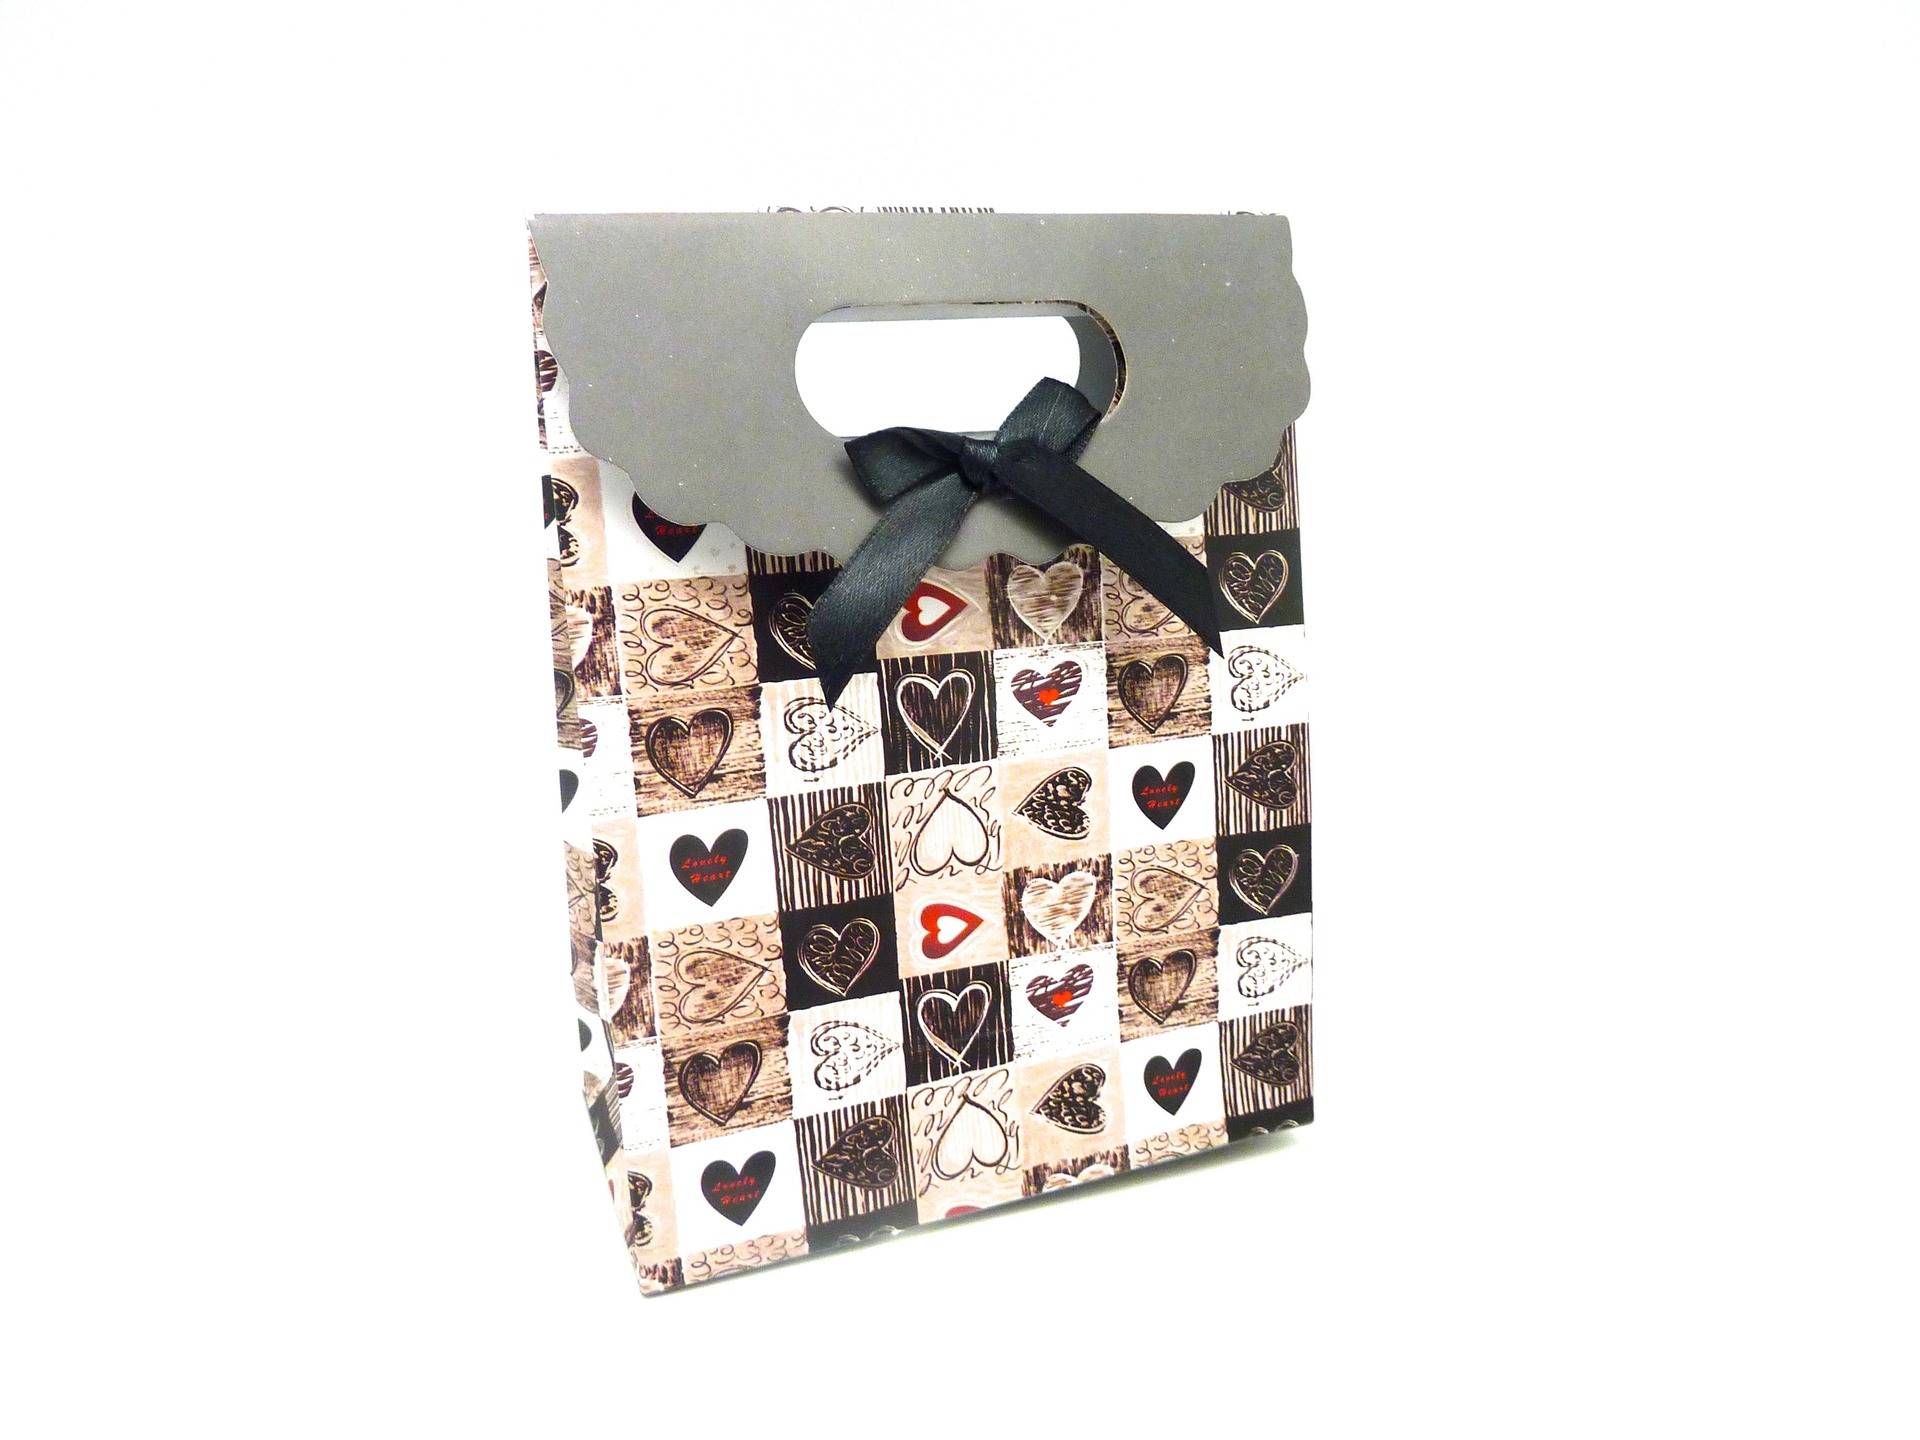 cœurs 13cm x 9cm x 5cm Pochette sac cadeau à fermeture scratch gift pouch 